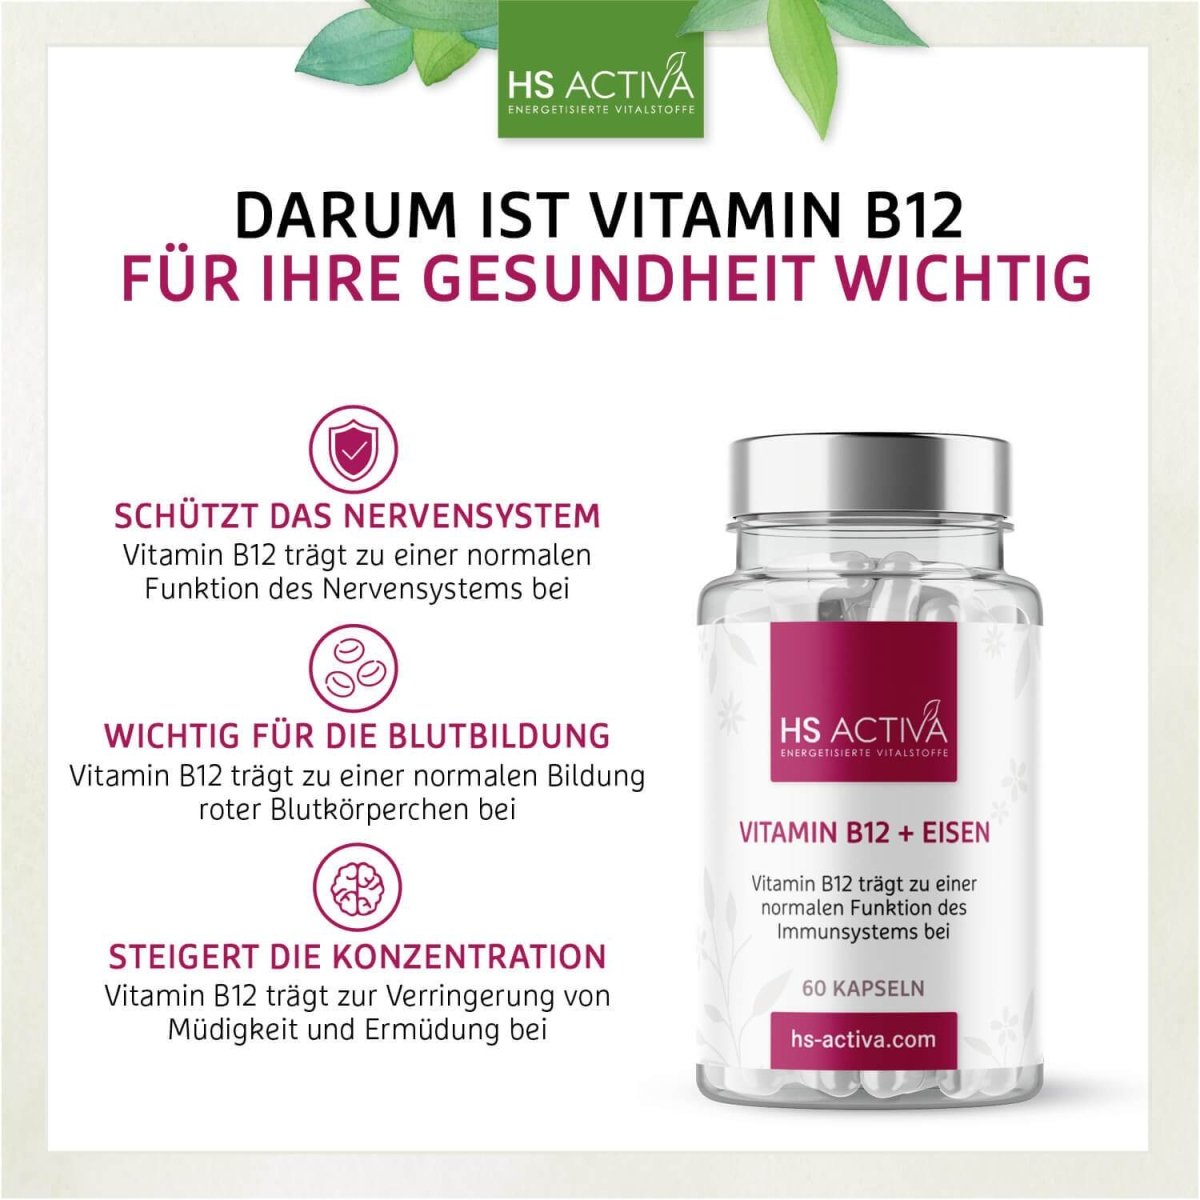 Vitamin B12 + Eisen - HS Activa